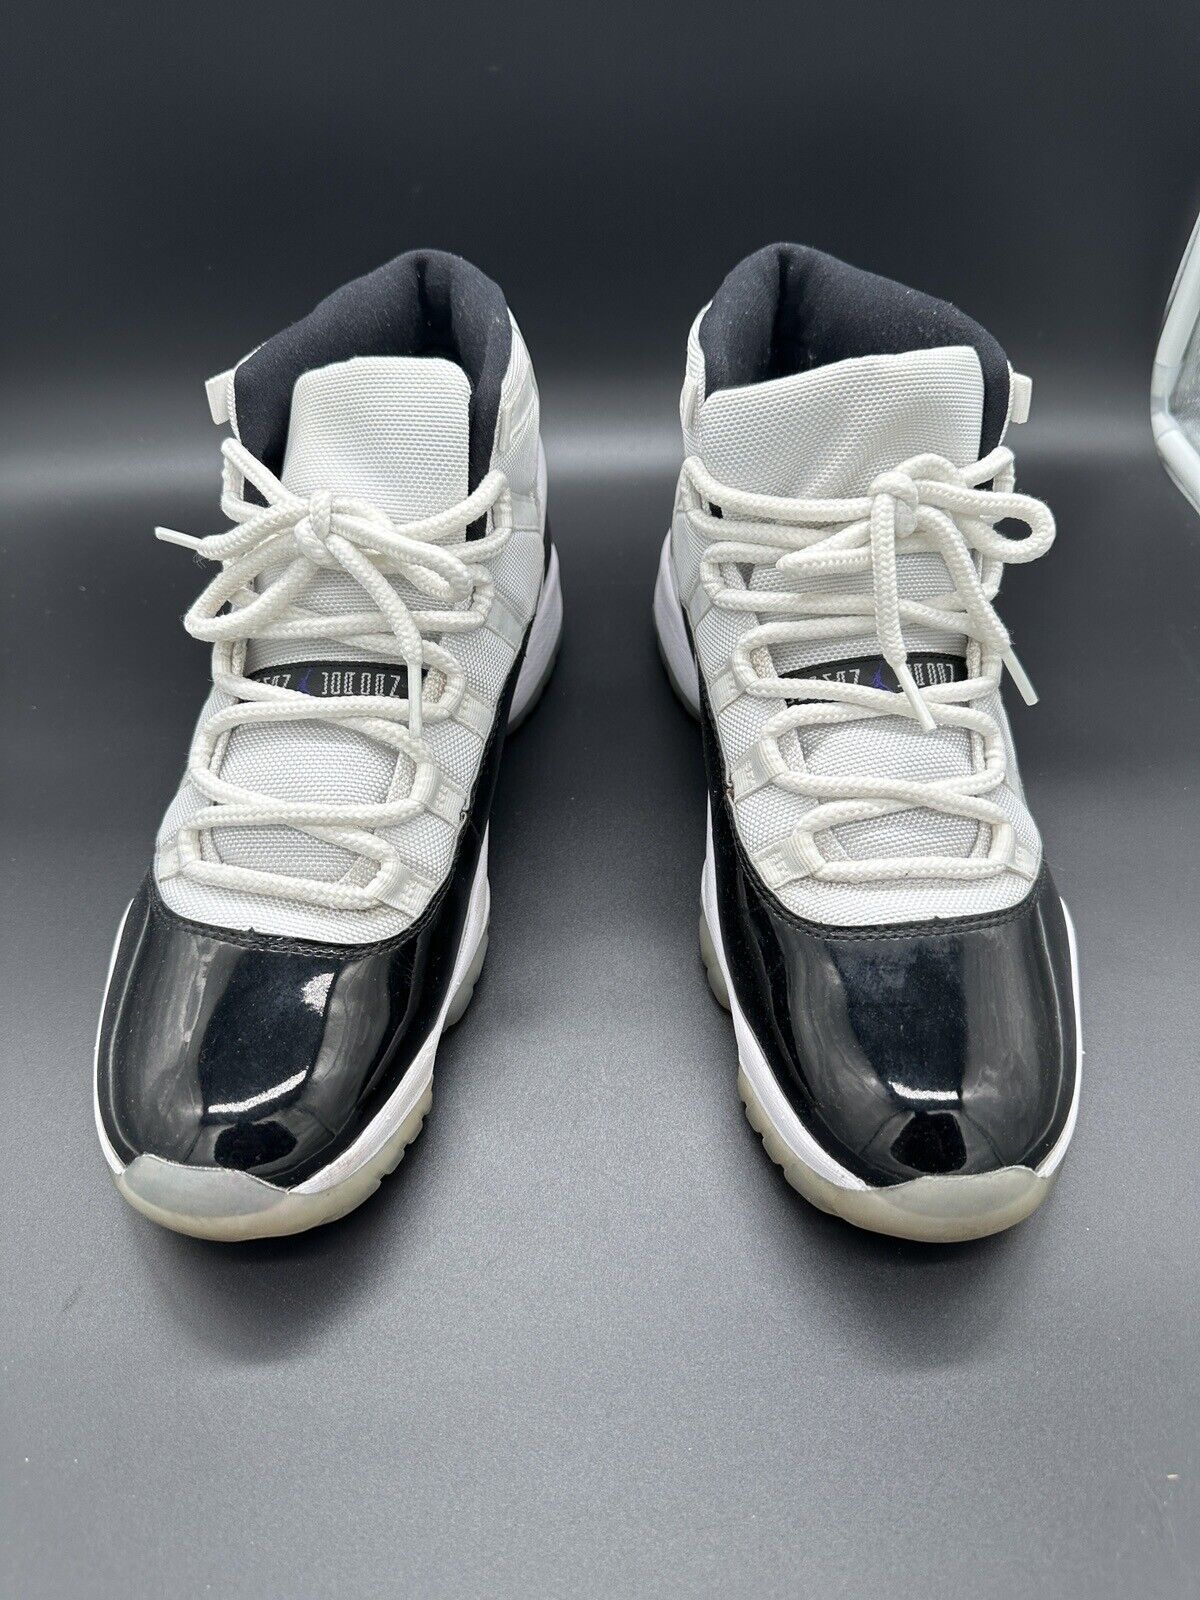 Nike Air Jordan 11 Concord Retro Size 46 Eu - US 12 Xi Collectors 